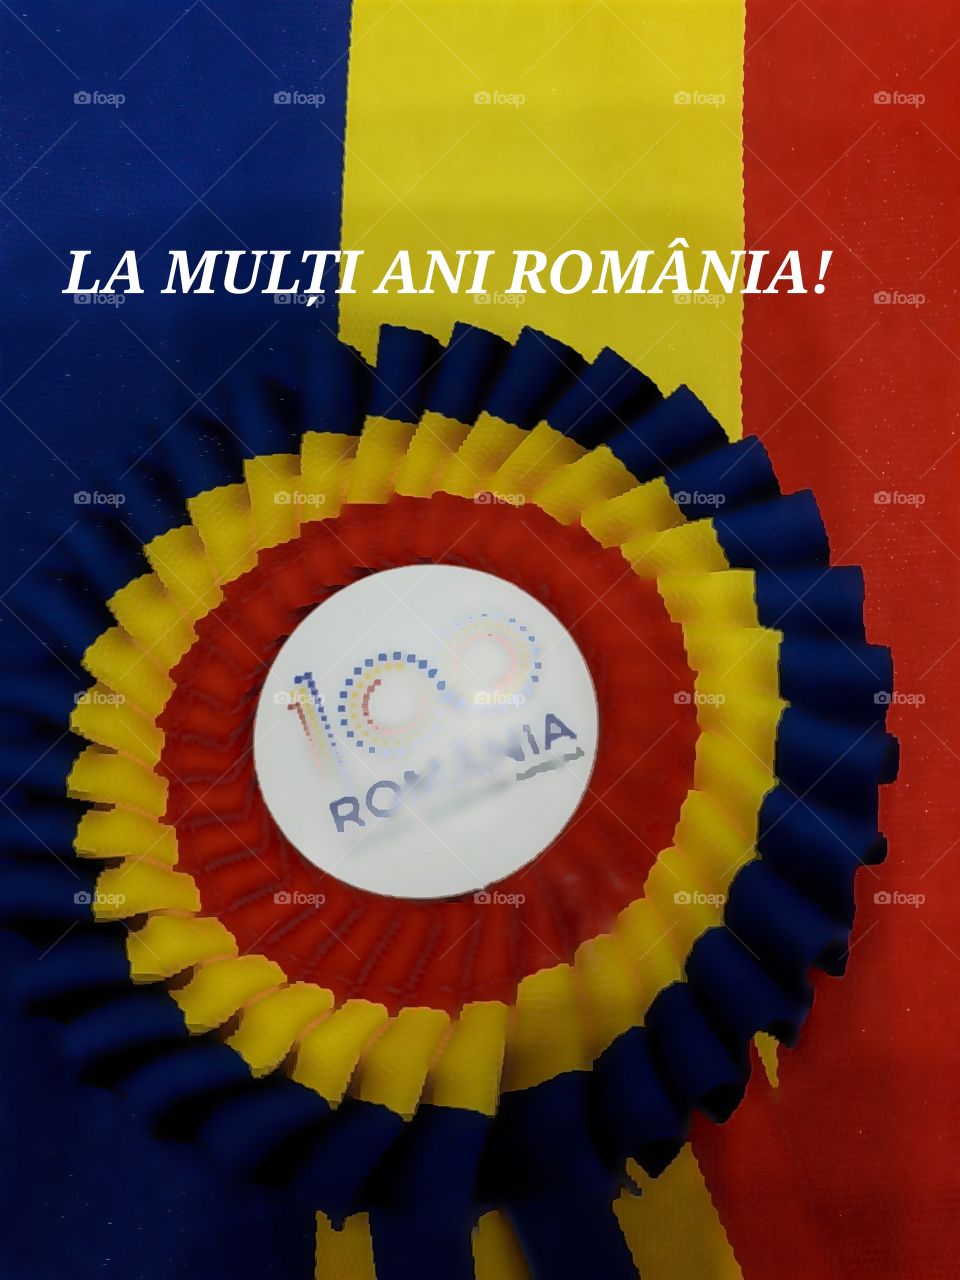 Happy Birthday to România